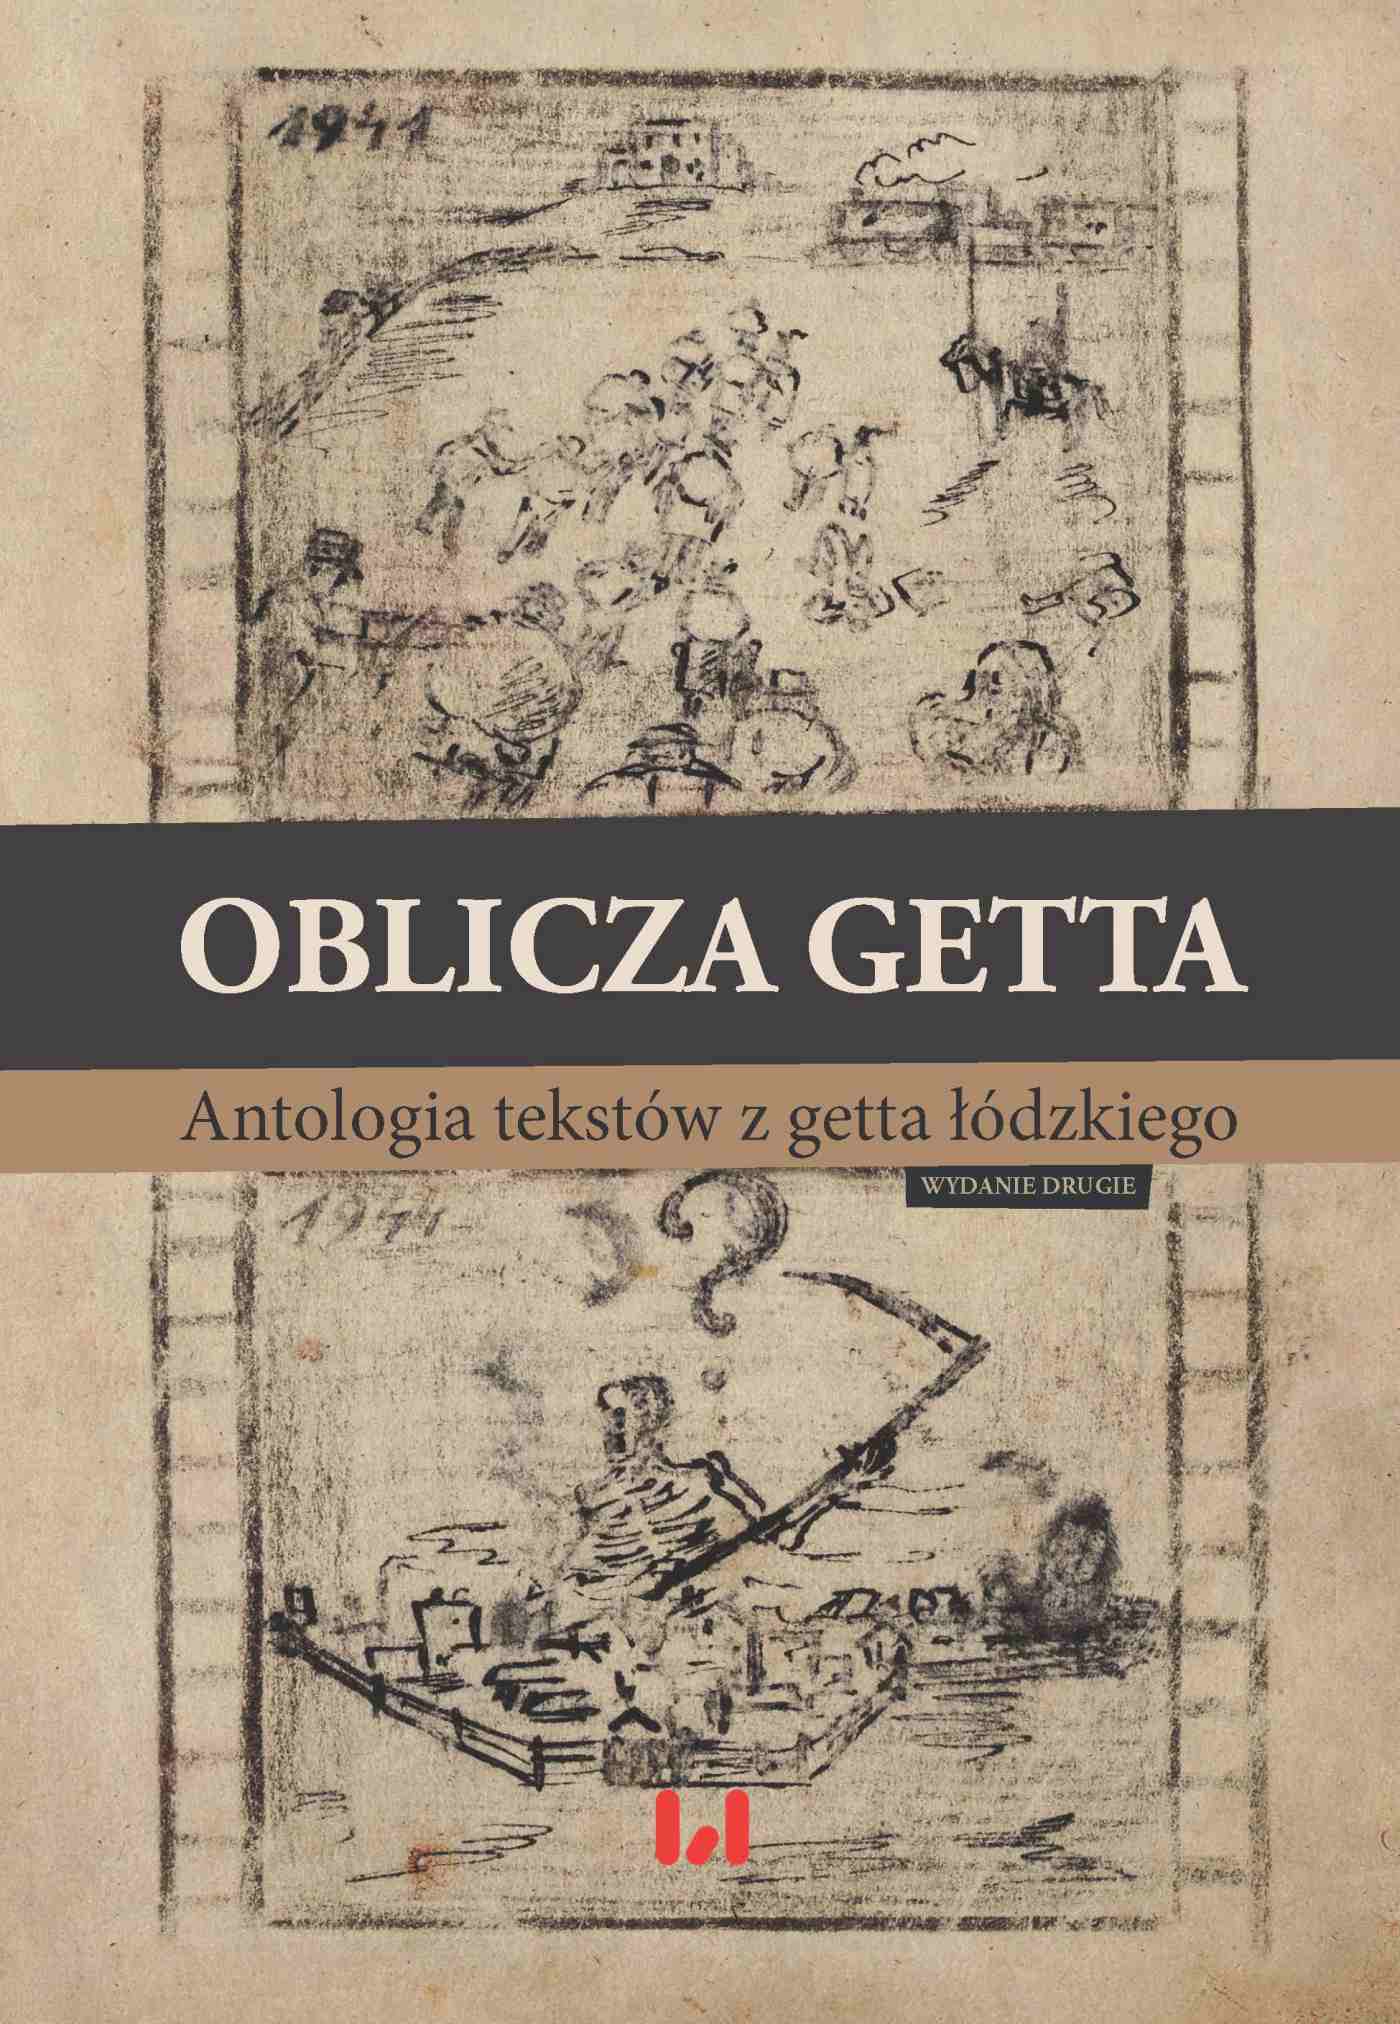 Okładka:Oblicza getta. Antologia literatury z getta łódzkiego. Wydanie drugie 